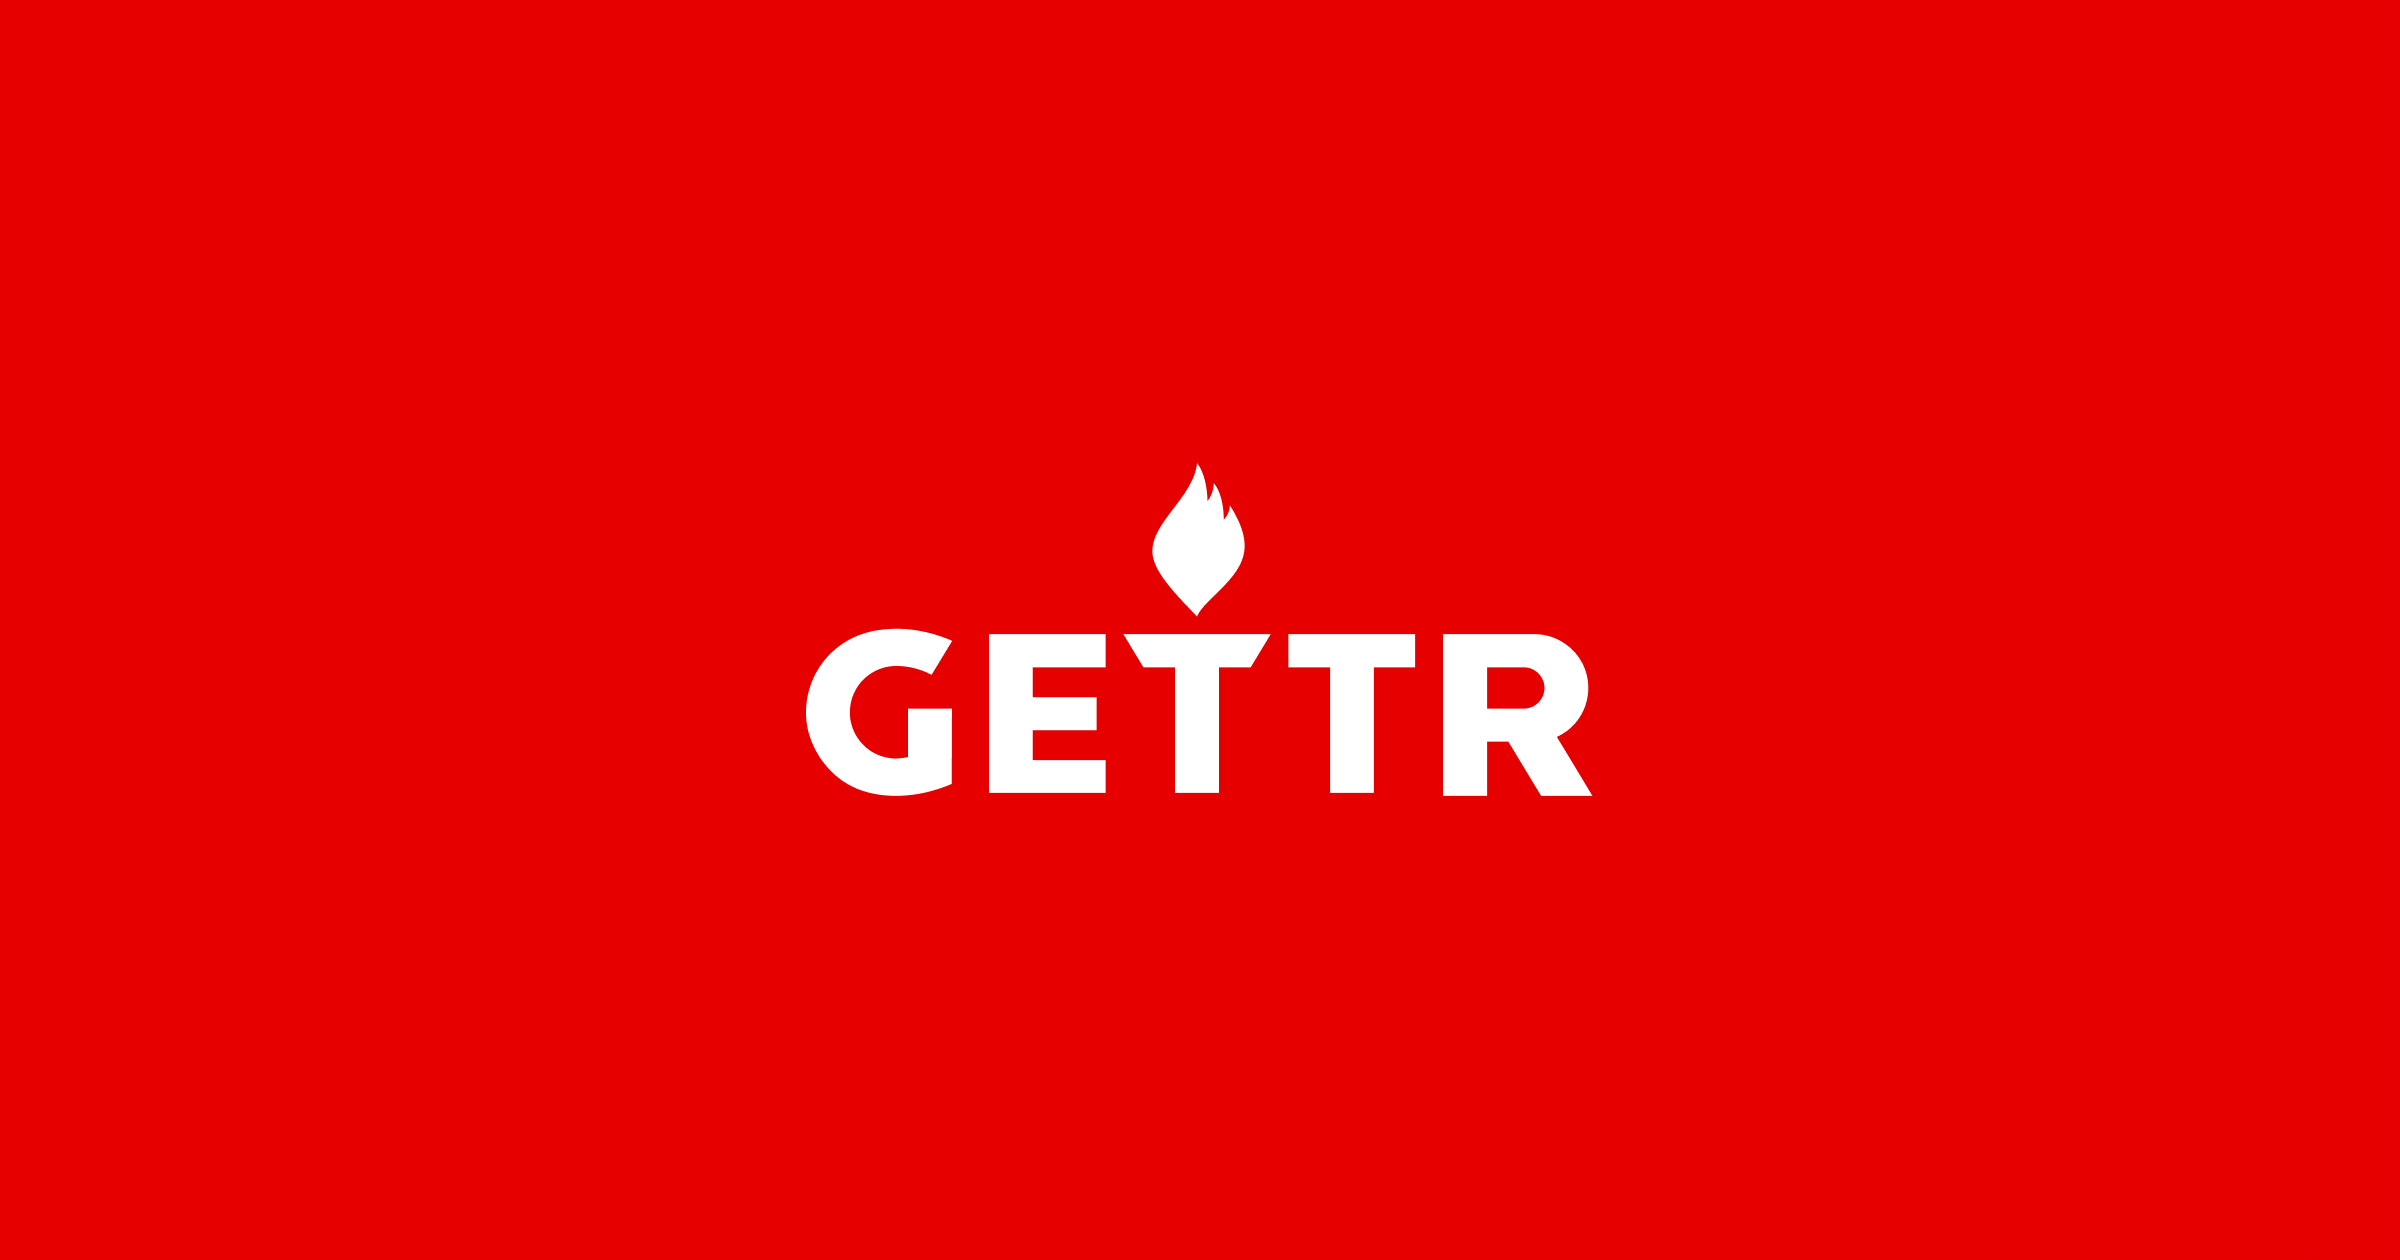 (c) Gettr.com